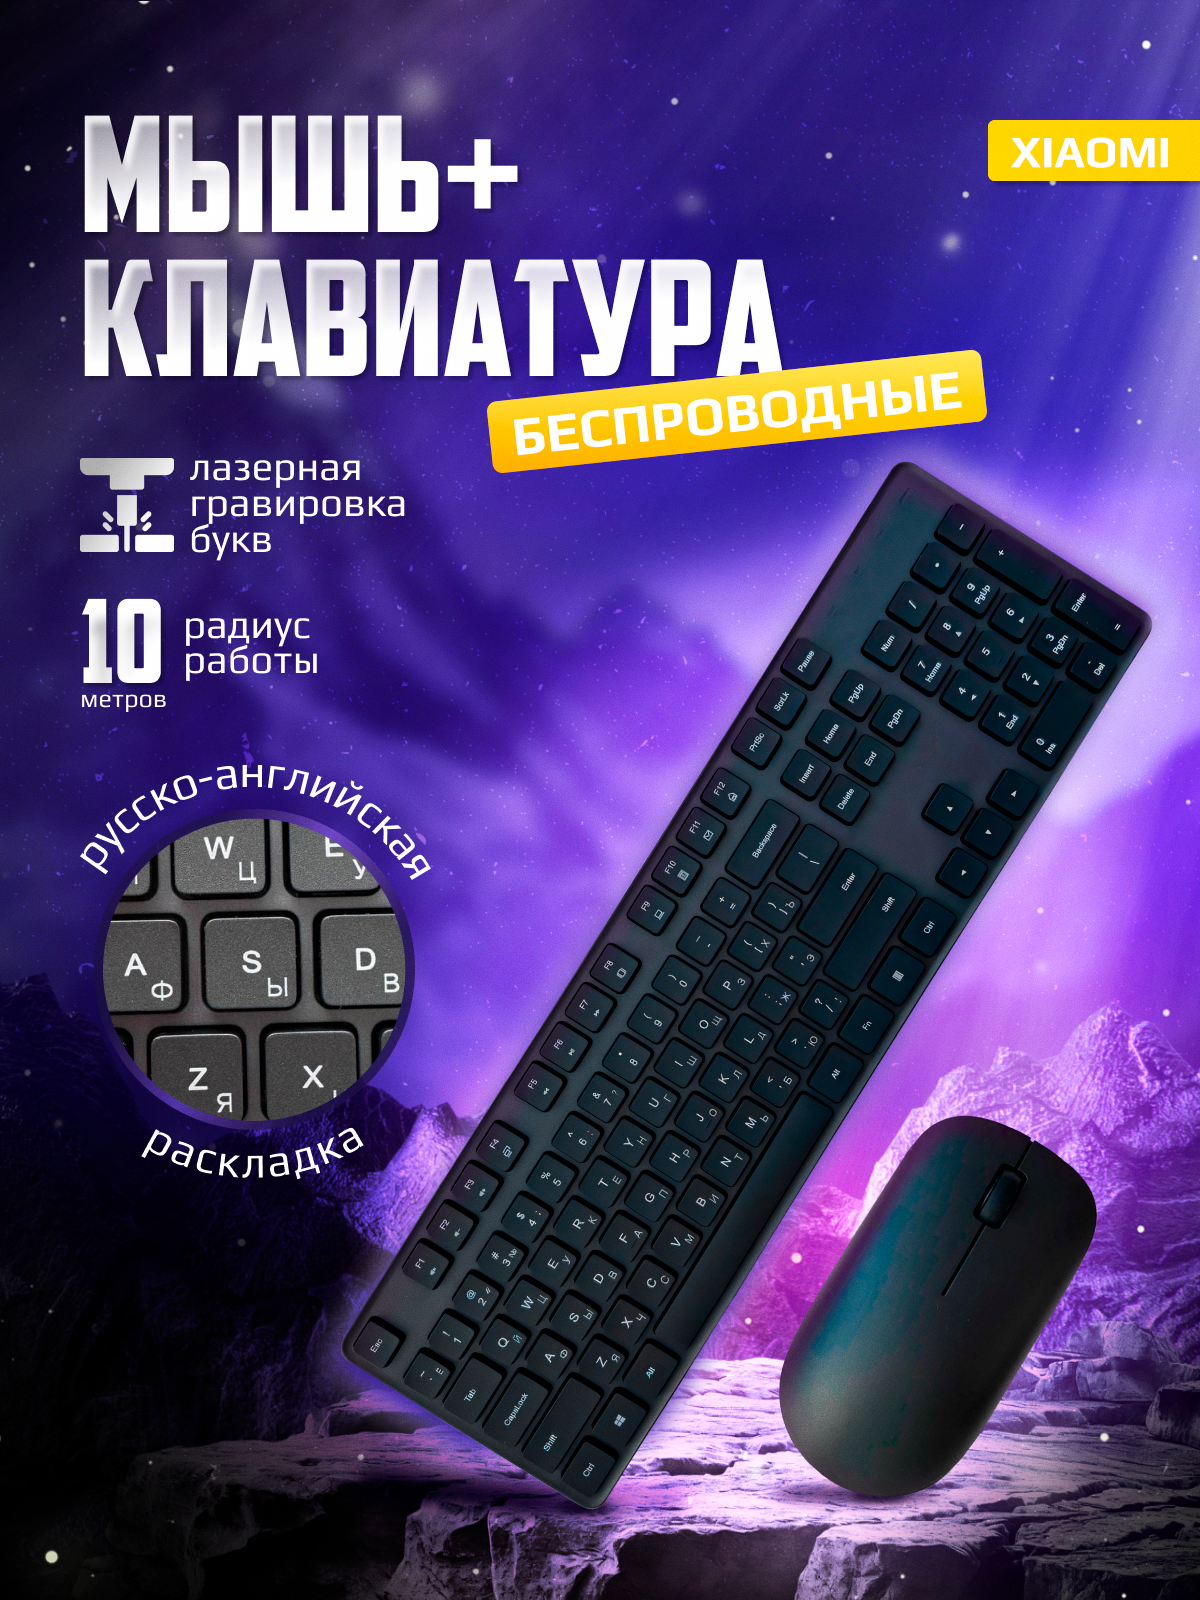 Комплект беспроводной клавиатуры и мышь Xiaomi Mi Wireless Keyboard and Mouse Combo (русская раскладка)